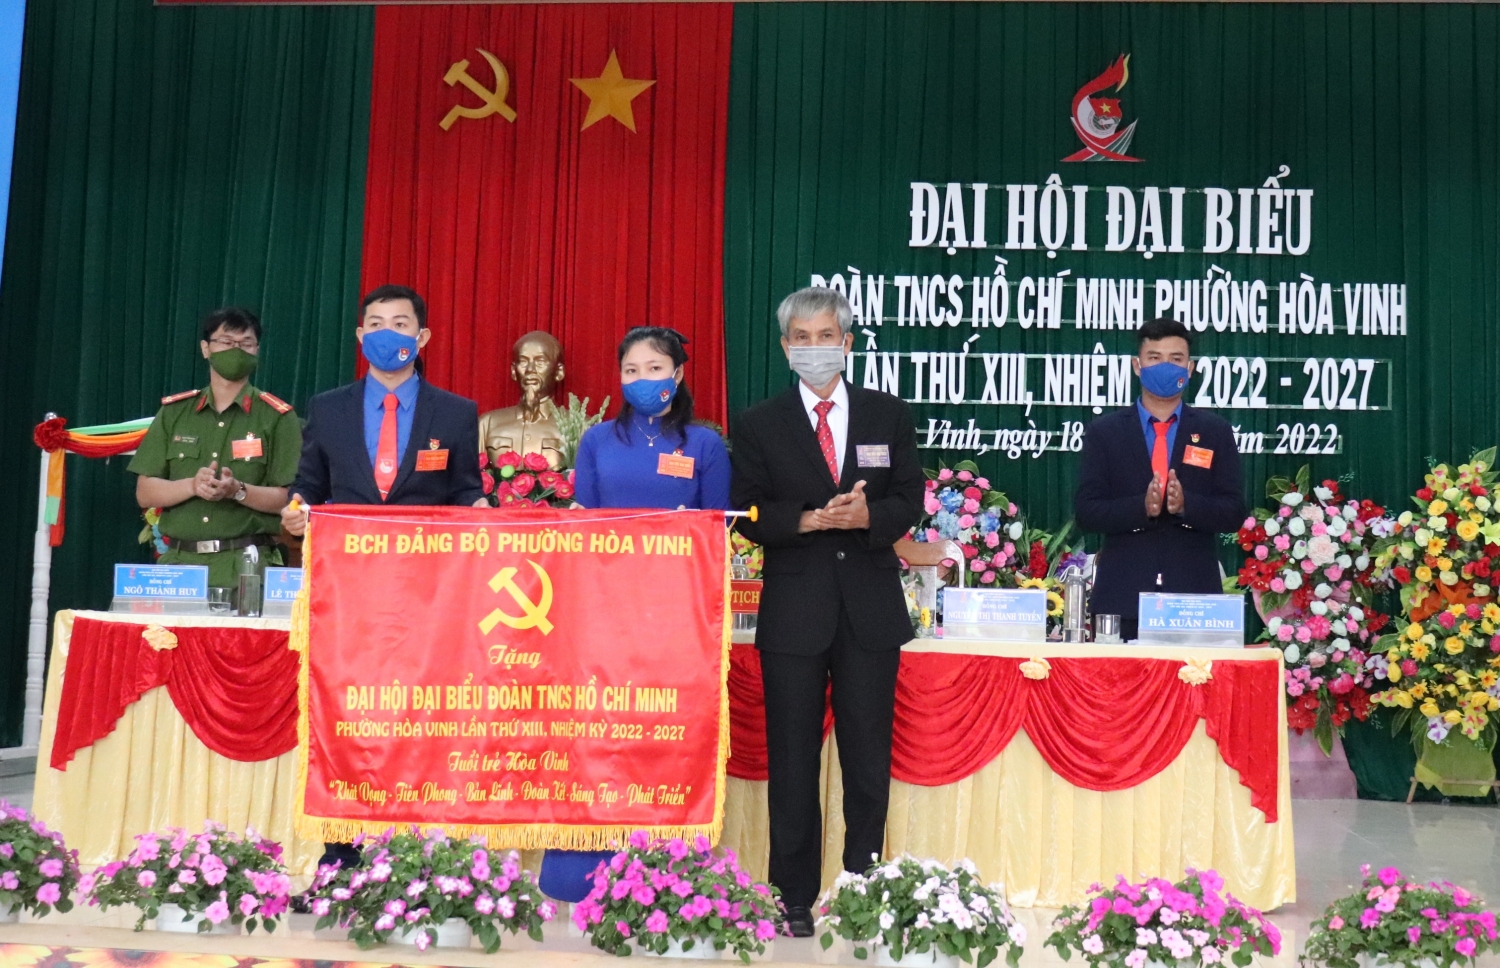 Đảng bộ phường Hòa Vinh tặng bức trướng cho Đại hội mang dòng chữ “Tuổi trẻ Hòa Vinh khát vọng, tiên phong, bản lĩnh, đoàn kết, sáng tạo, phát triển”.